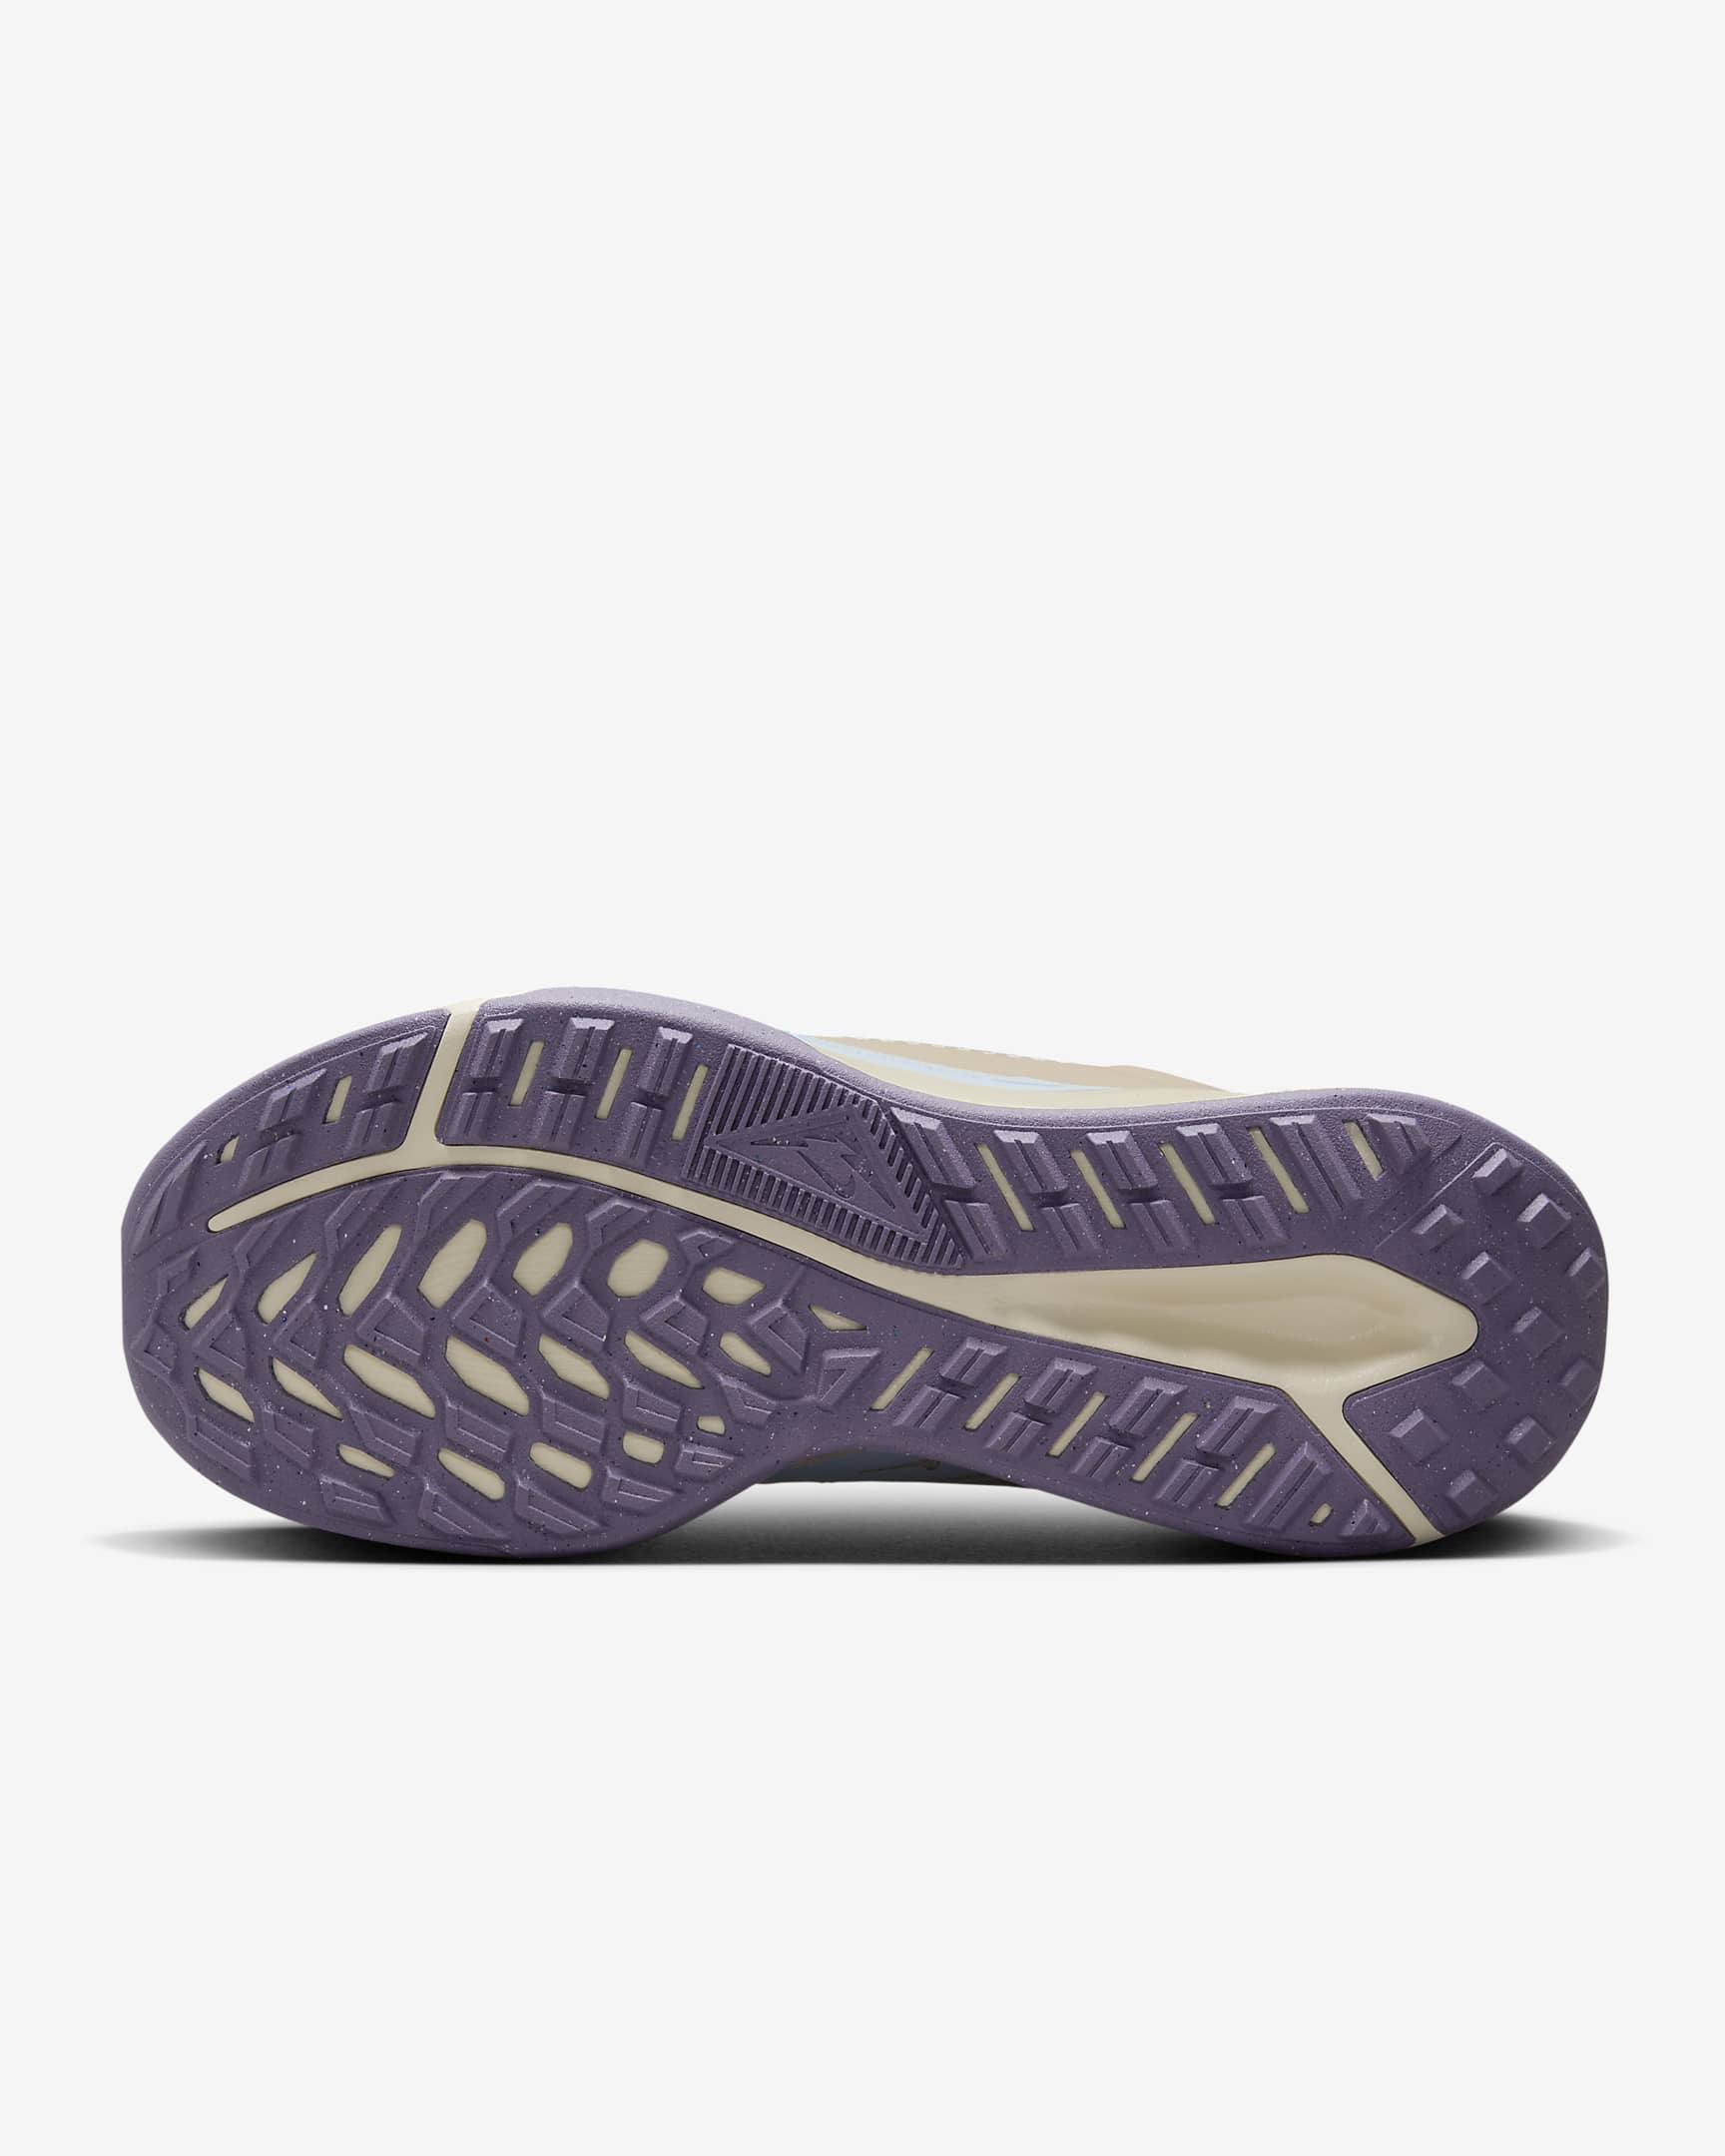 Chaussure de trail imperméable Nike Juniper Trail 2 GORE-TEX pour femme - Sanddrift/Glacier Blue/Cosmic Clay/Daybreak